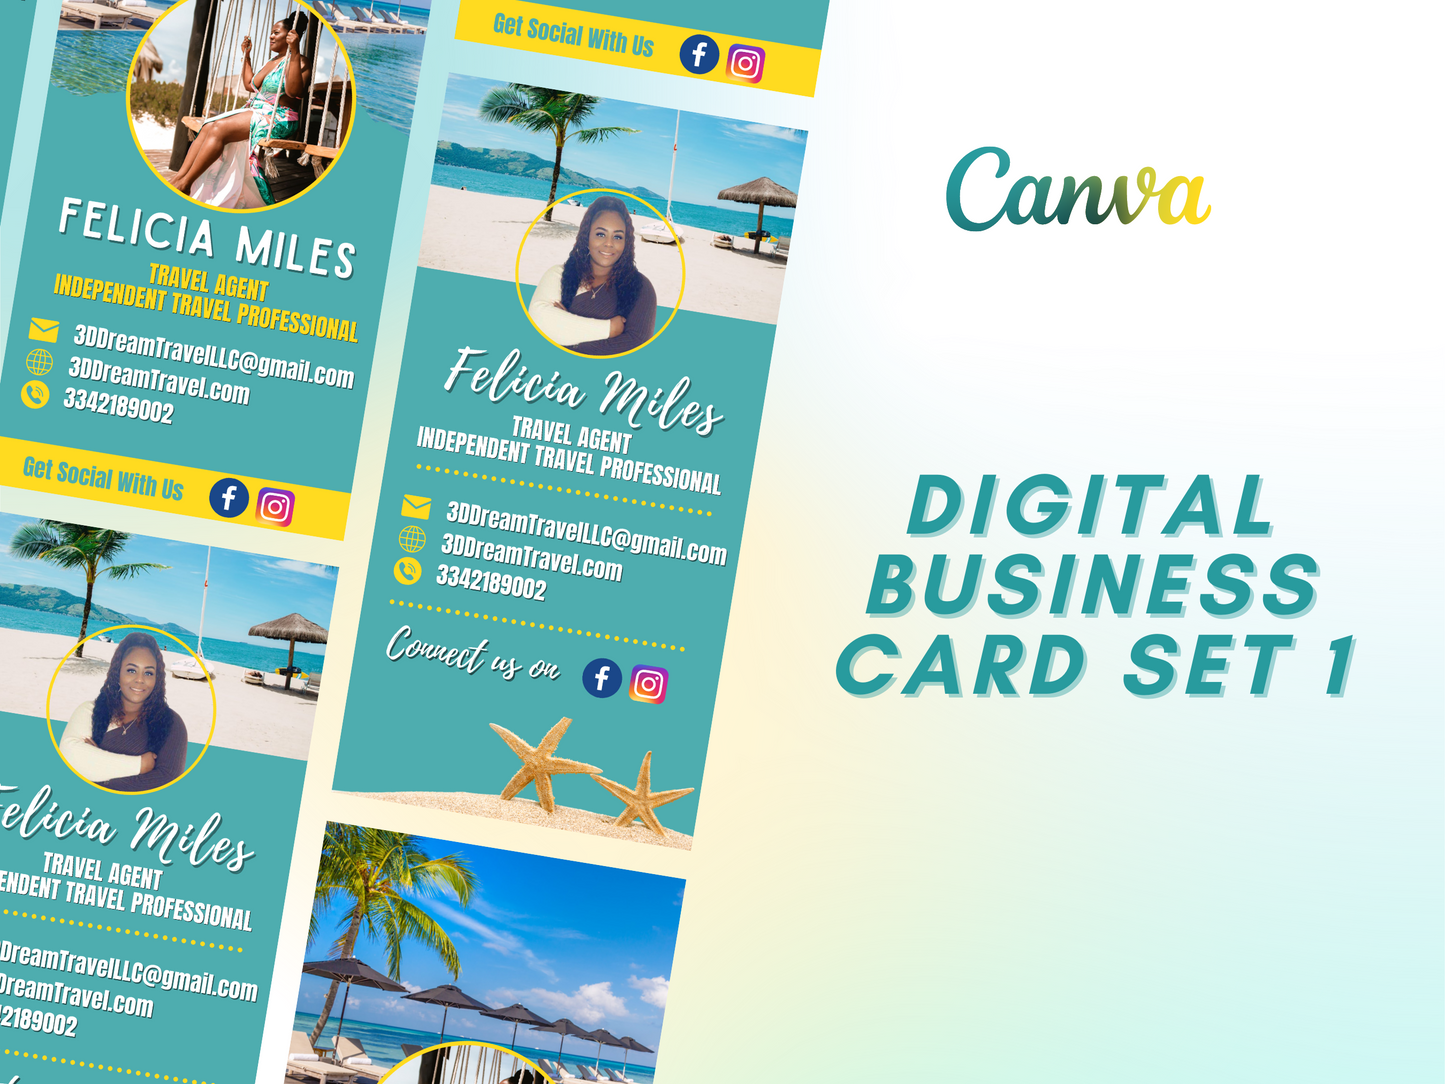 Digital Business Cards Set 1